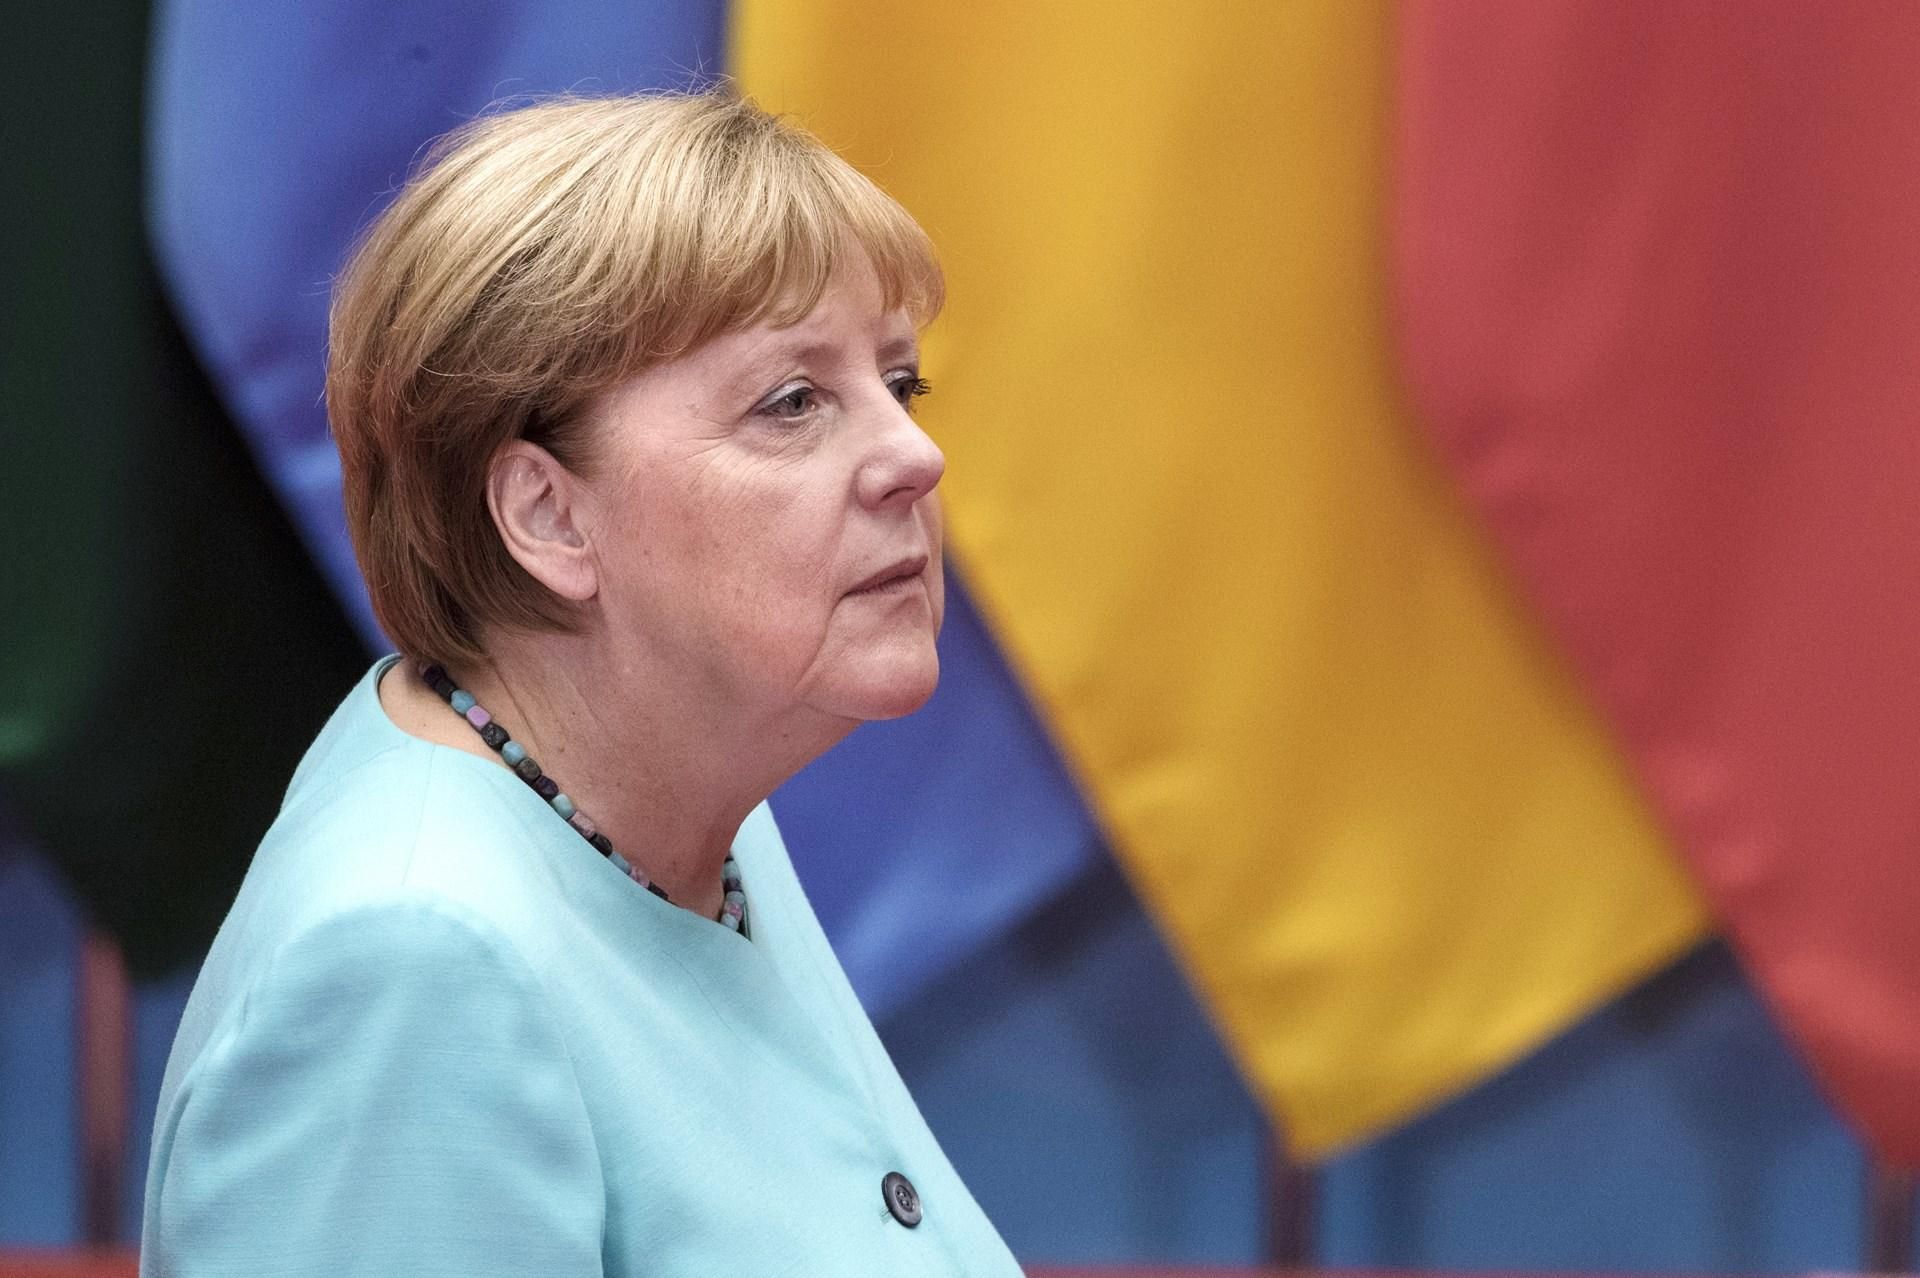 Эксперты расшифровали, что шептала Меркель, когда дрожала